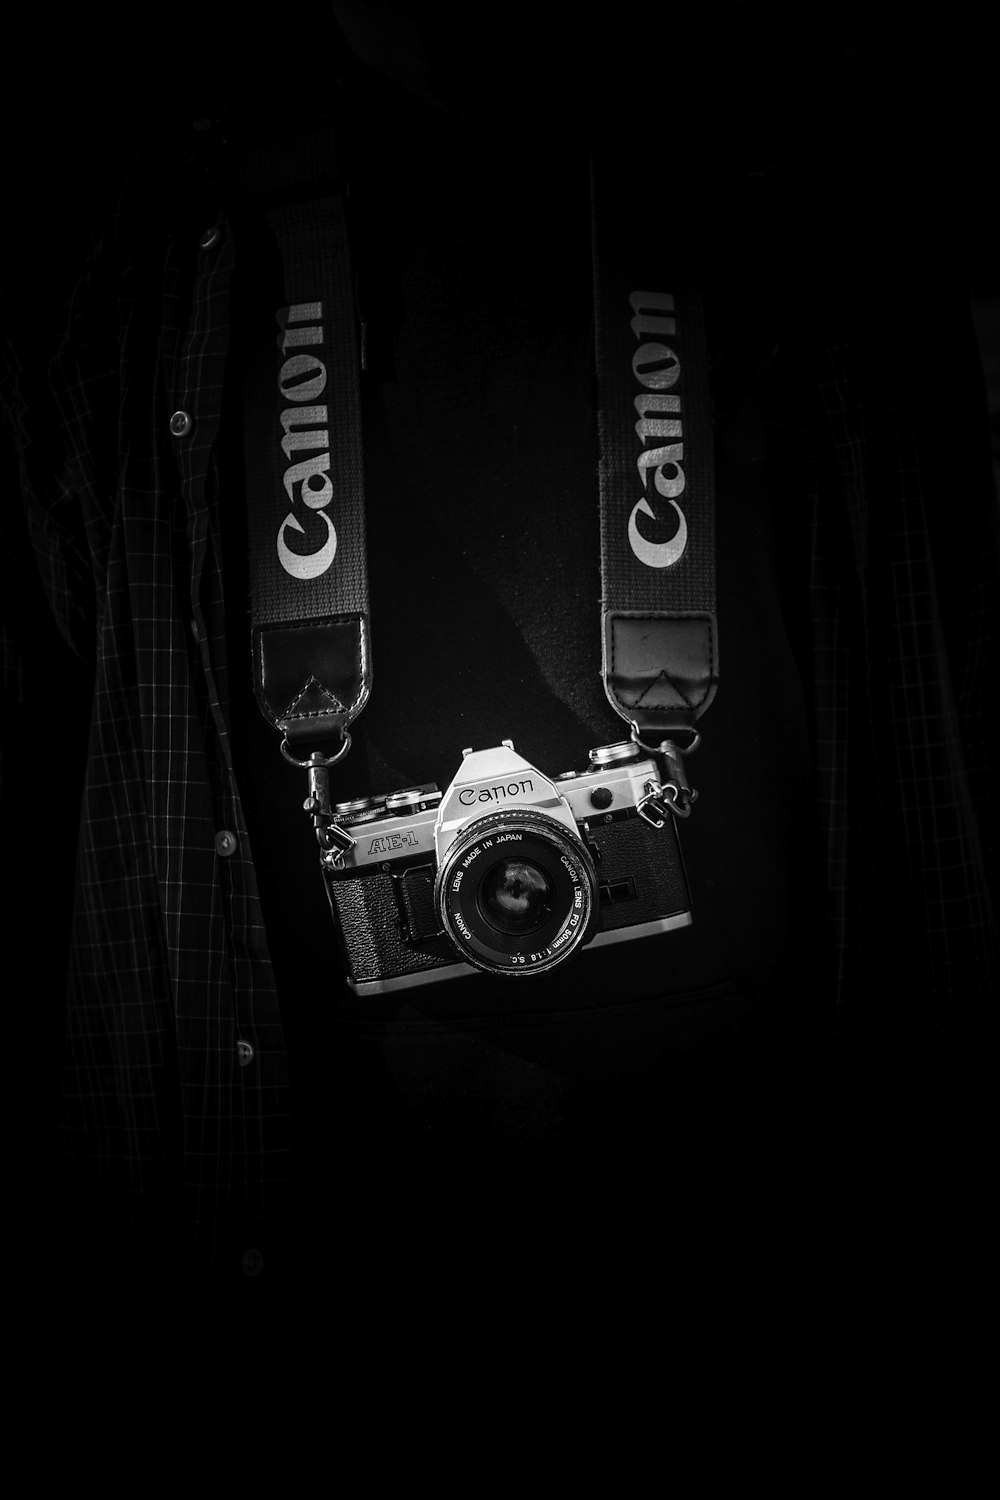 Cuerpo de cámara Canon gris y negro con cordón